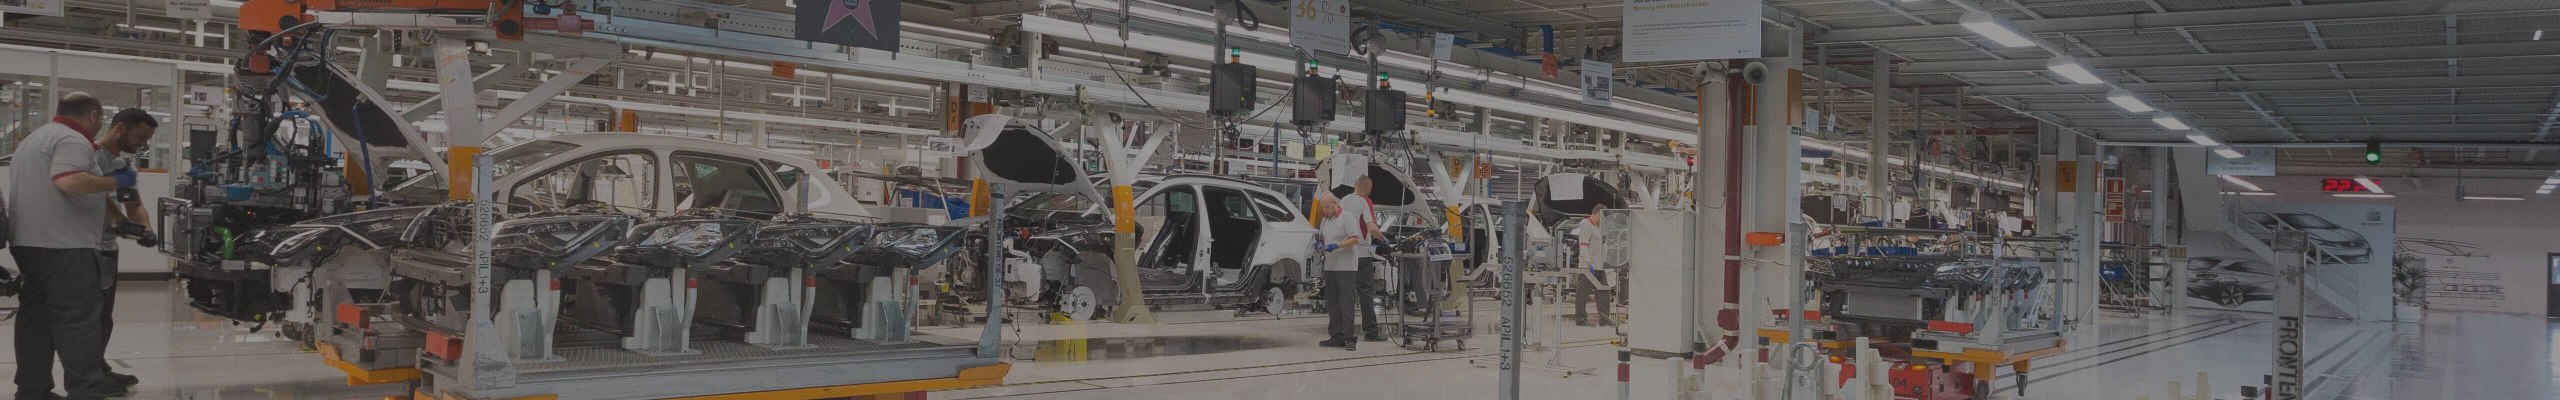 Operatorzy i roboty pracujące w fabryce SEAT-a Martorell